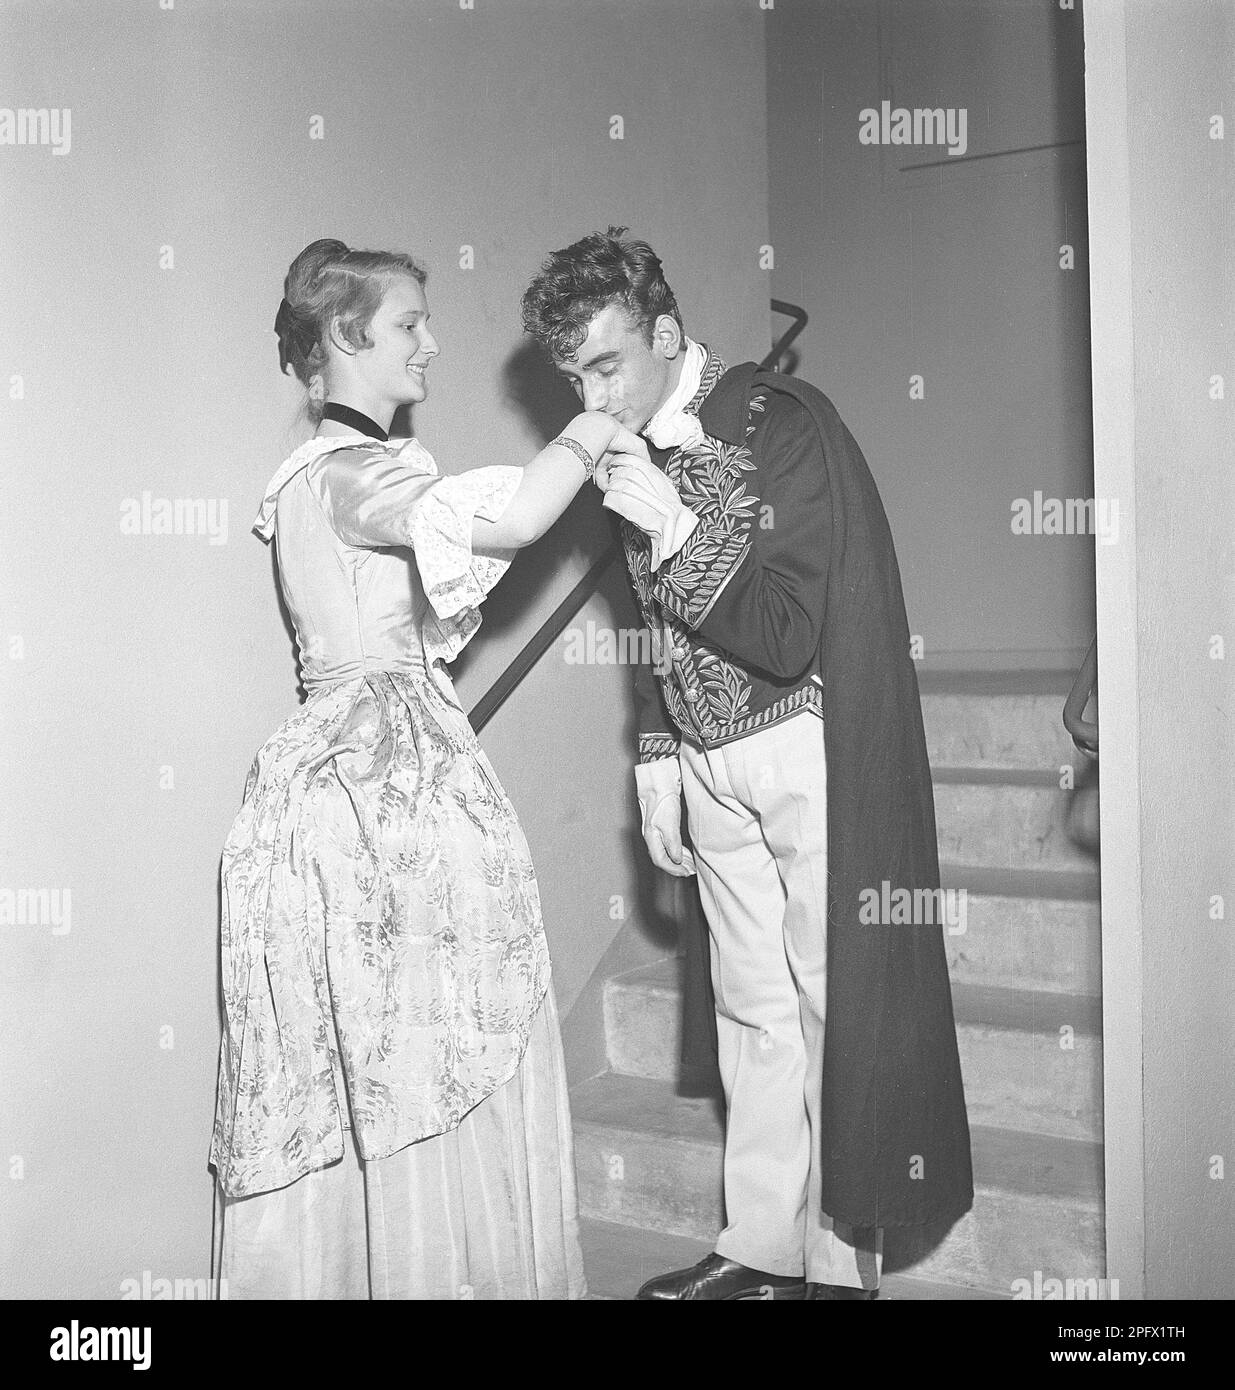 Kuss auf die Hand. Ein Paar in historischer Kleidung, wo der junge Mann ihre Hand hält und küsst. Schweden 1951 Kristoffersson Ref BE86-7 Stockfoto